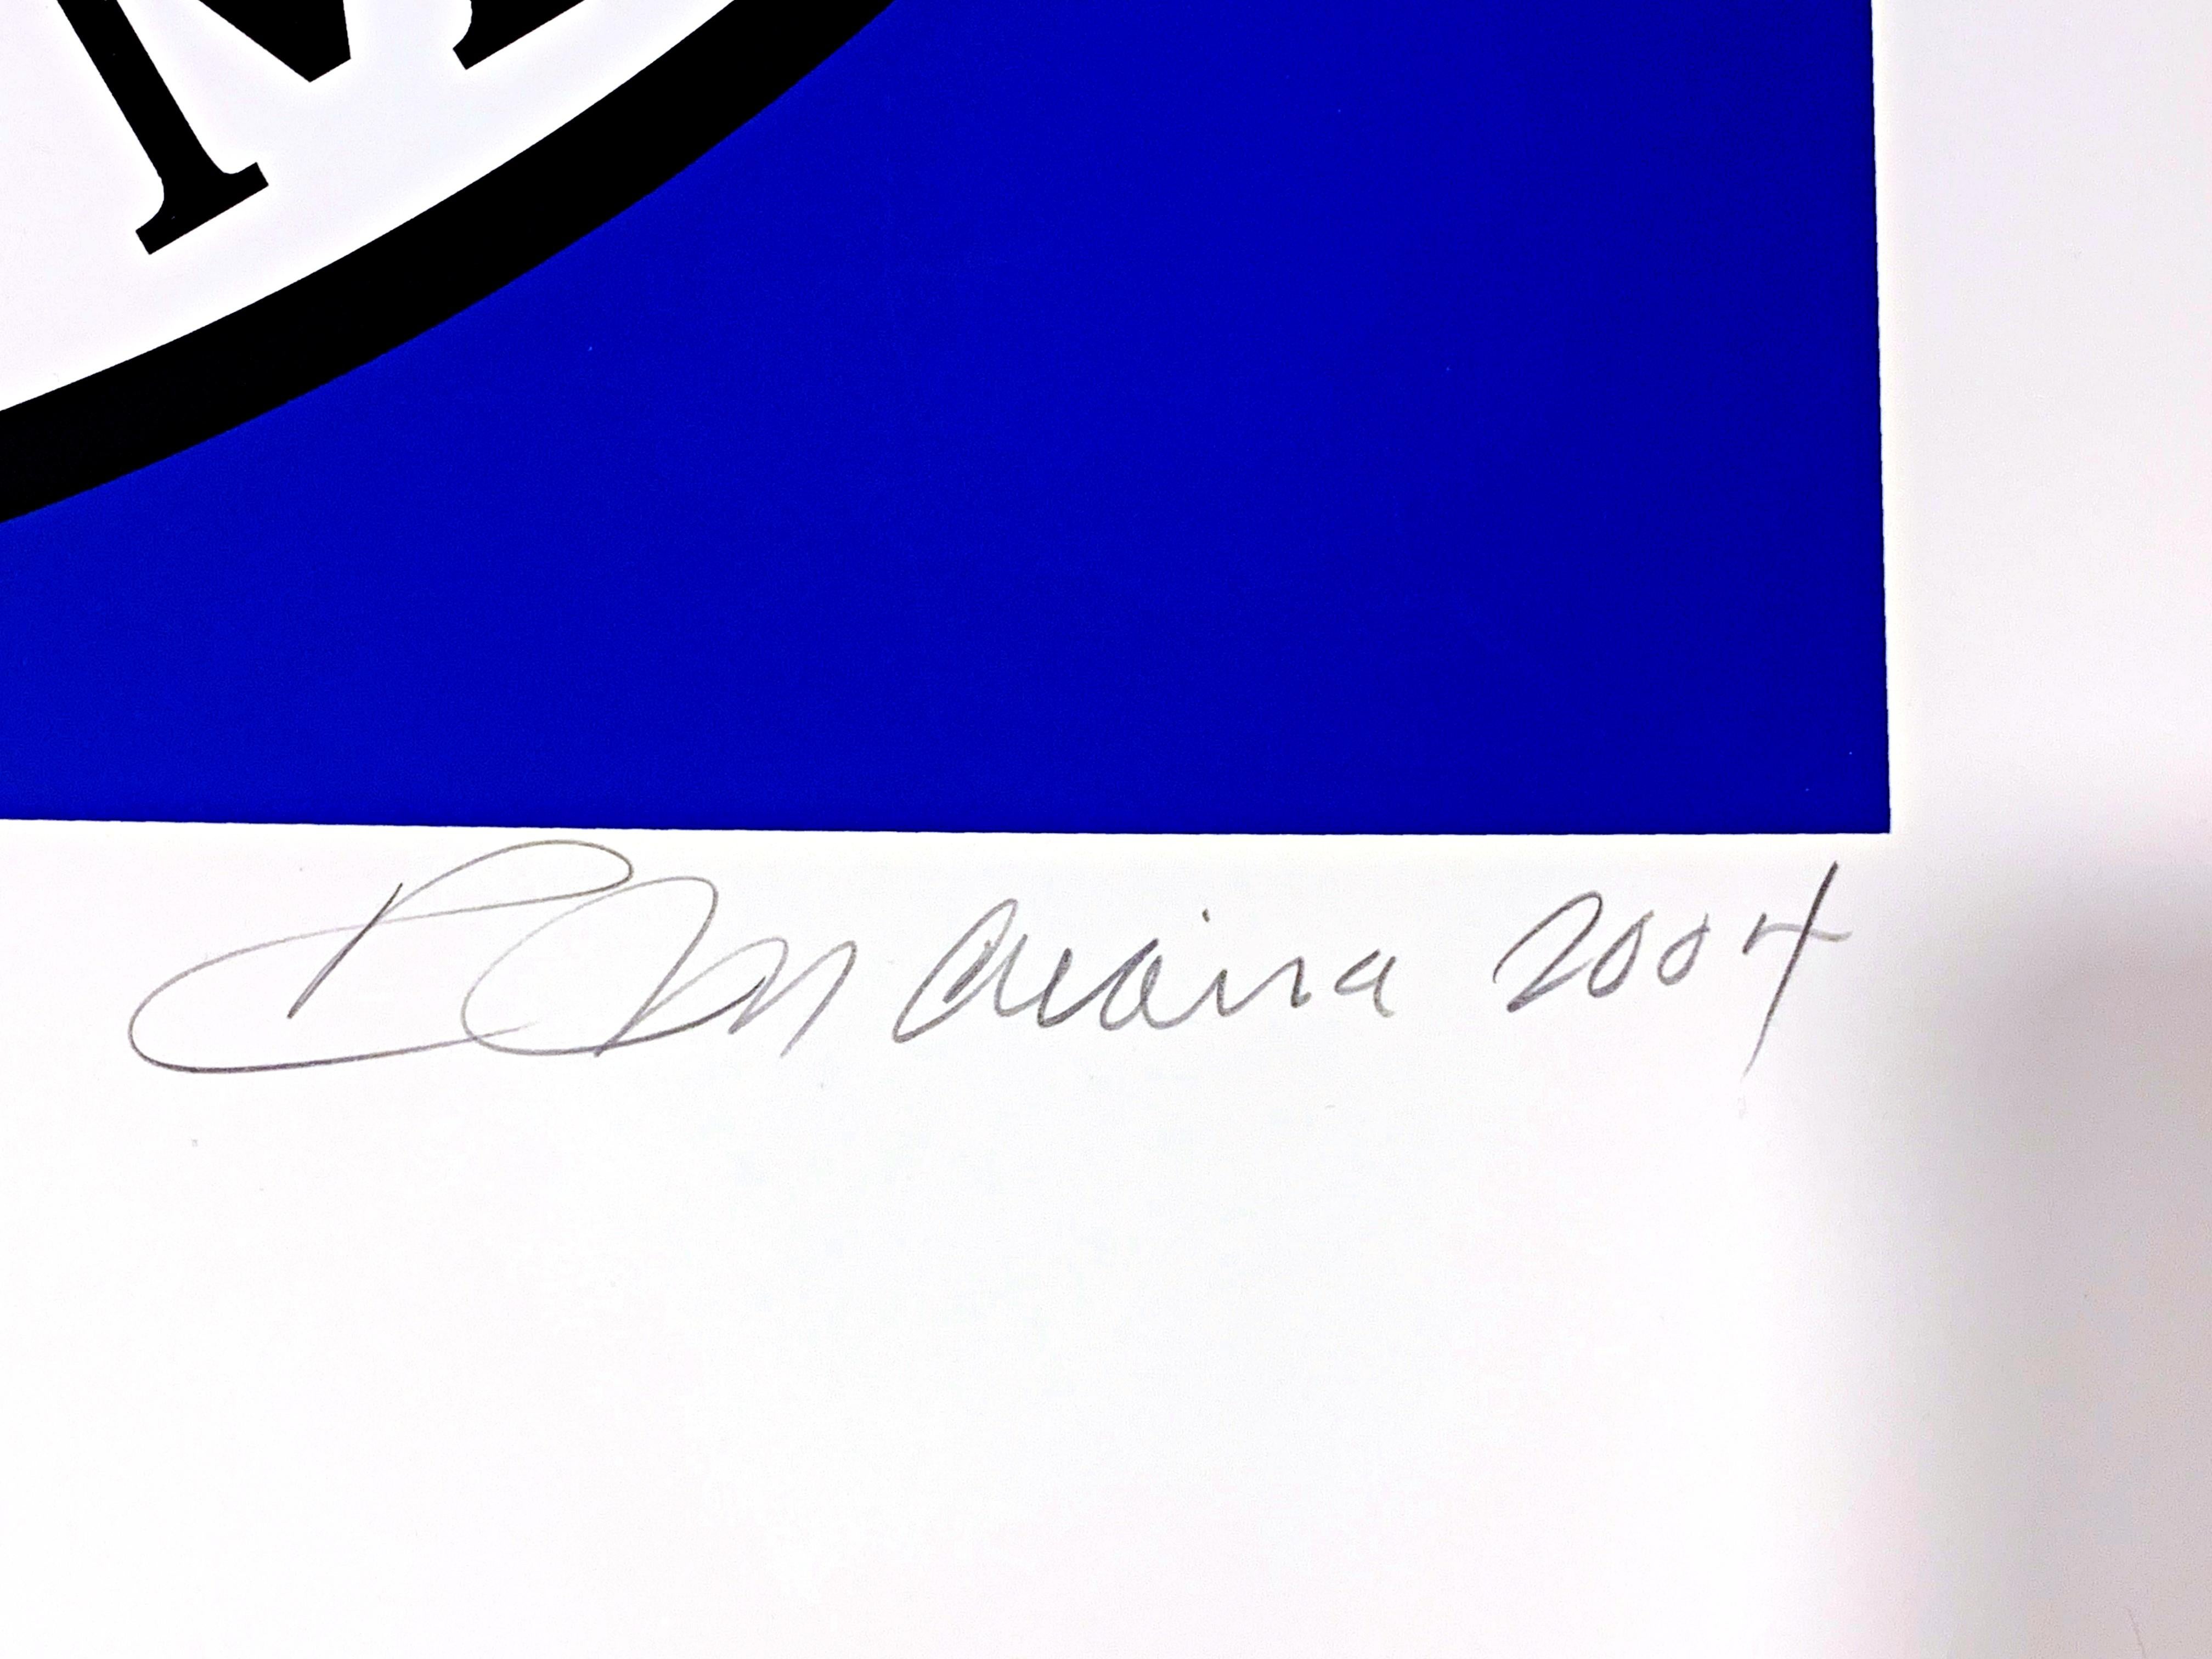 Robert Indiana
Pax, Paix, Shalom (L'imprimé de la paix),  2004
Sérigraphie en 4 couleurs sur papier rives BFK
Signée, datée, titrée et numérotée 35/50 au crayon par Robert Indiana au recto.
Publié par le musée de Tel Aviv
33 × 32 pouces
Non